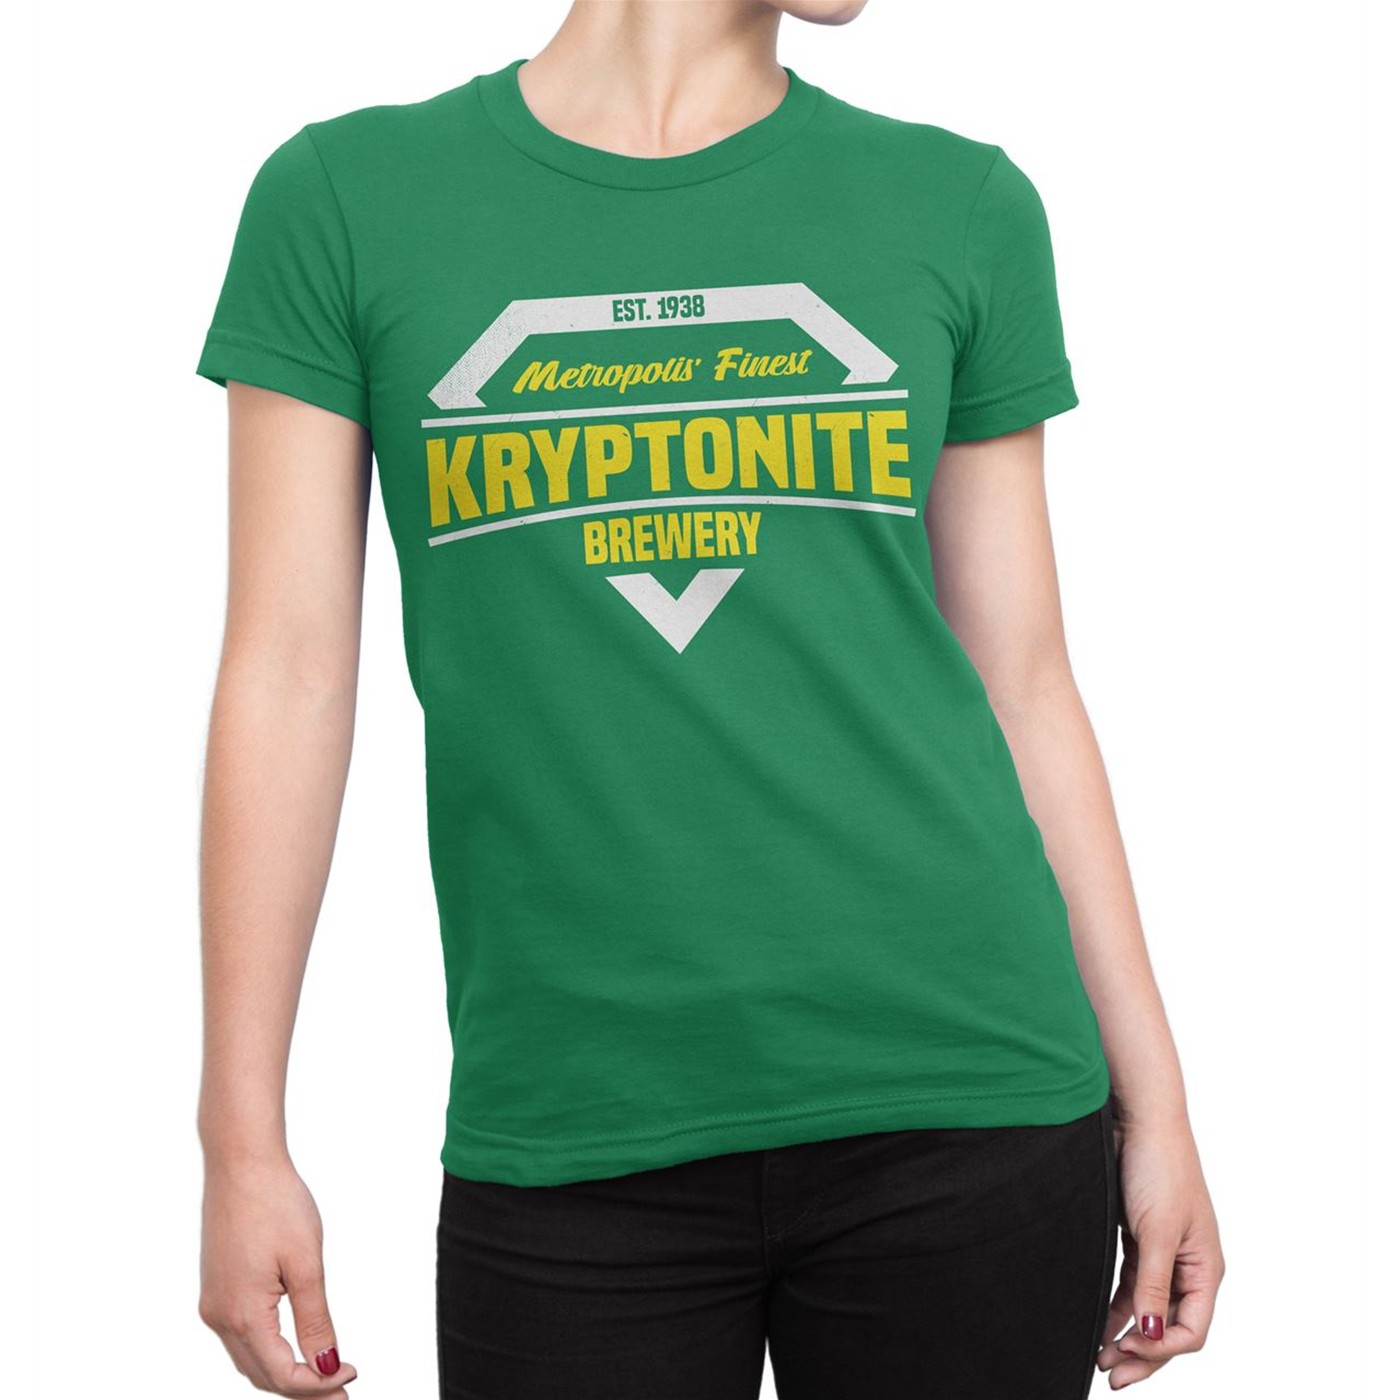 Kryptonite Brewery Women's T-Shirt